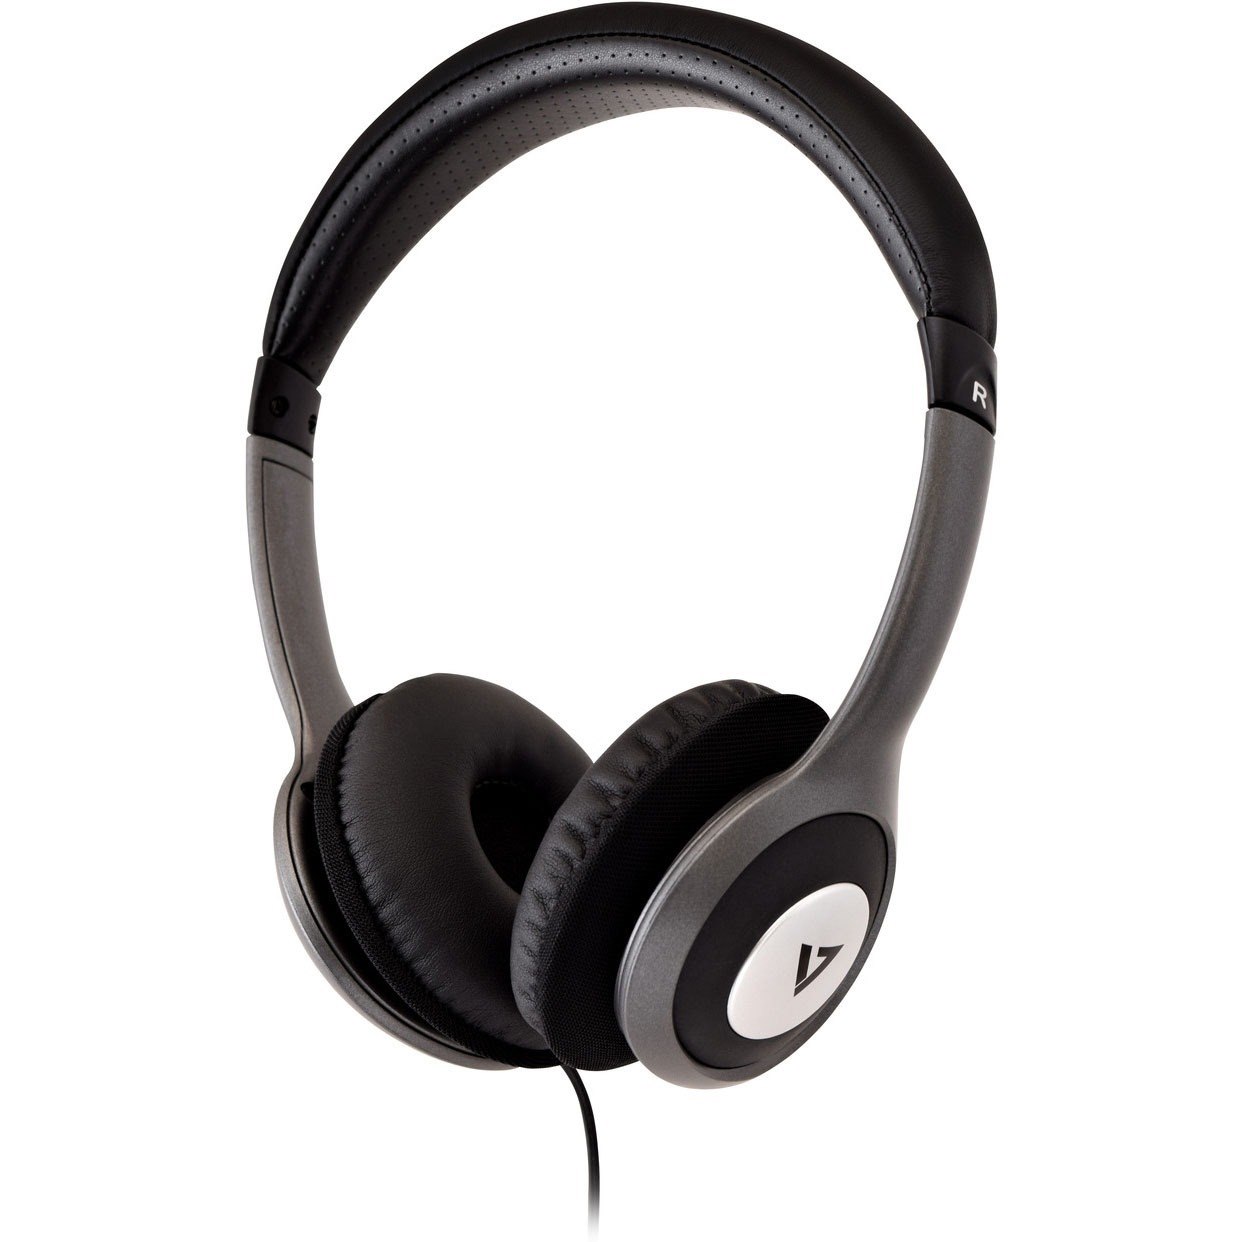 V7 HA520-2EP Wired Over-the-head Binaural Stereo Headphone - Black, Grey Blister